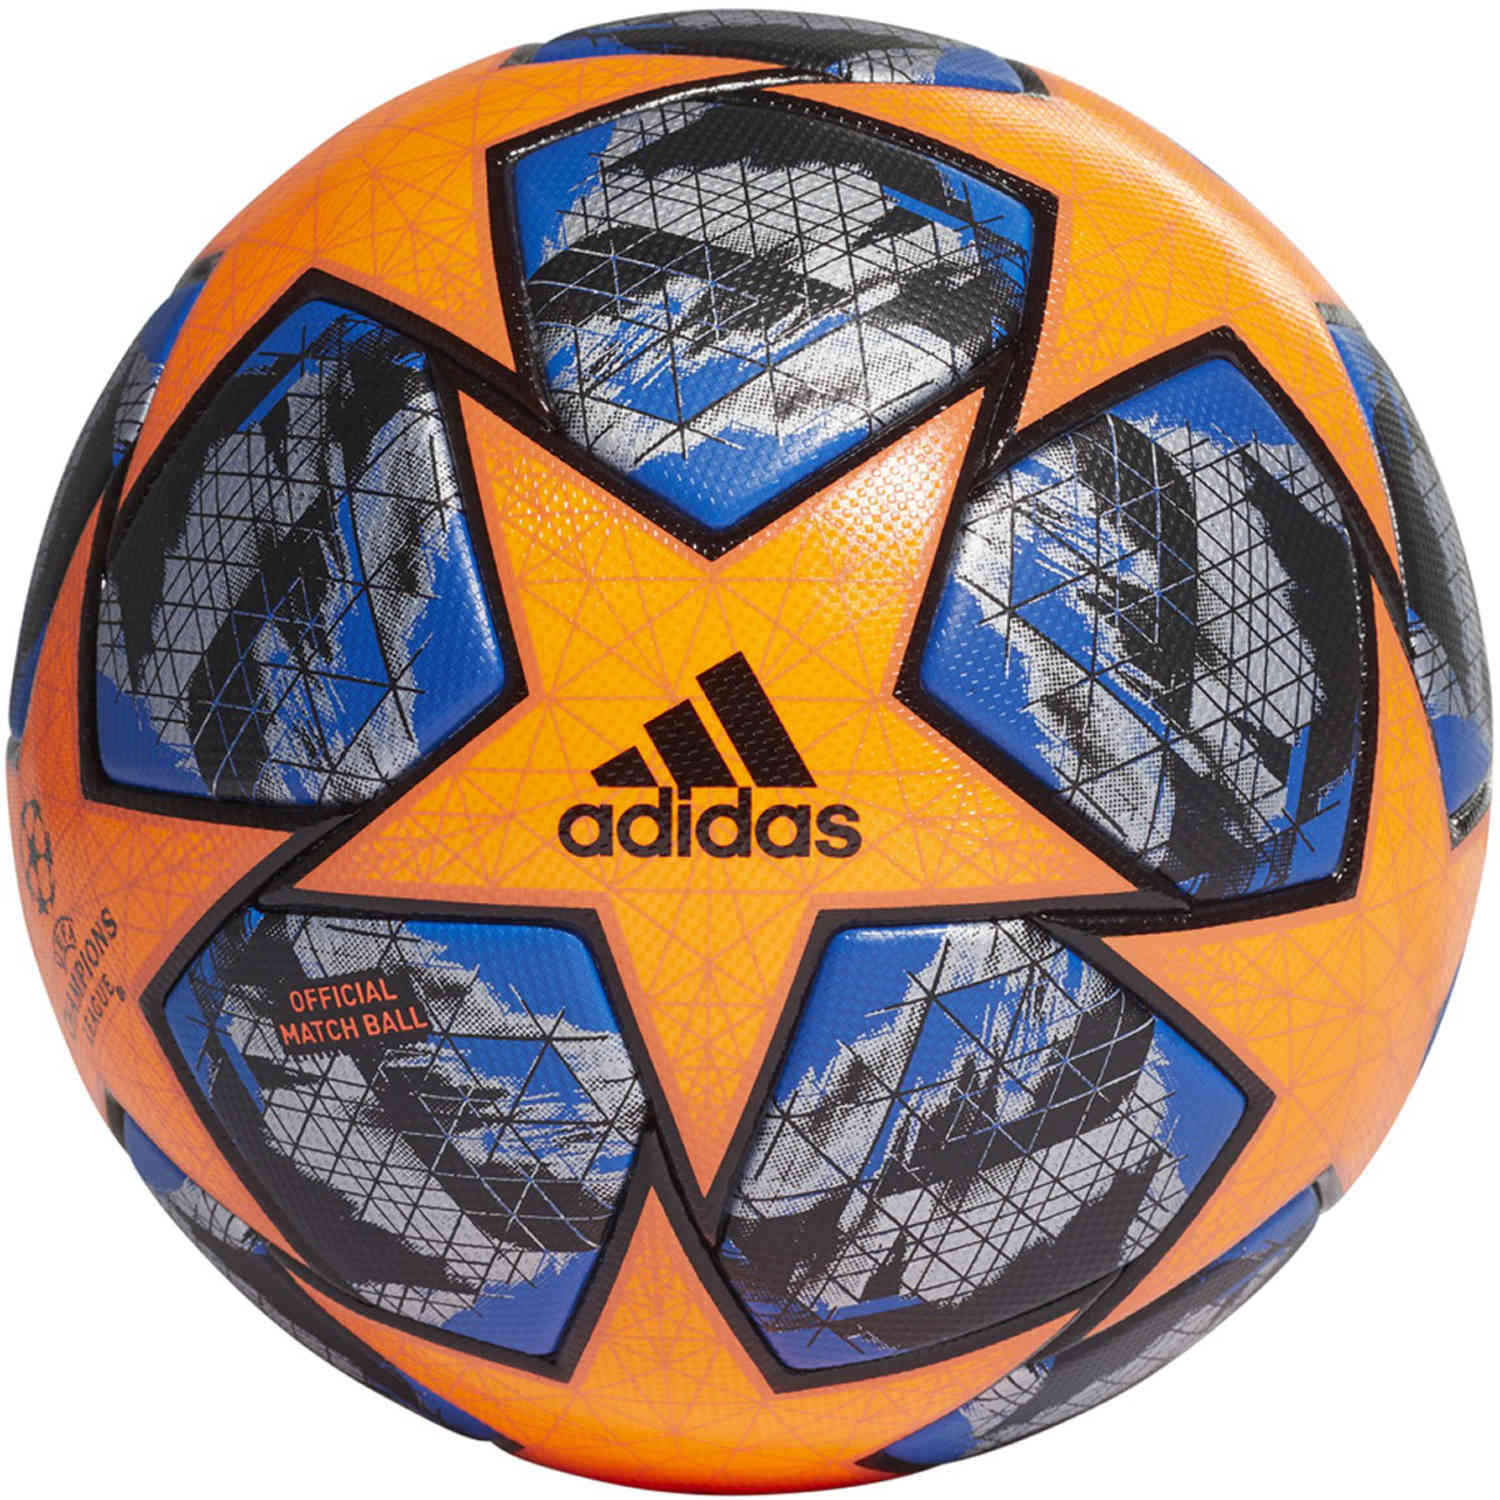 ucl soccer ball